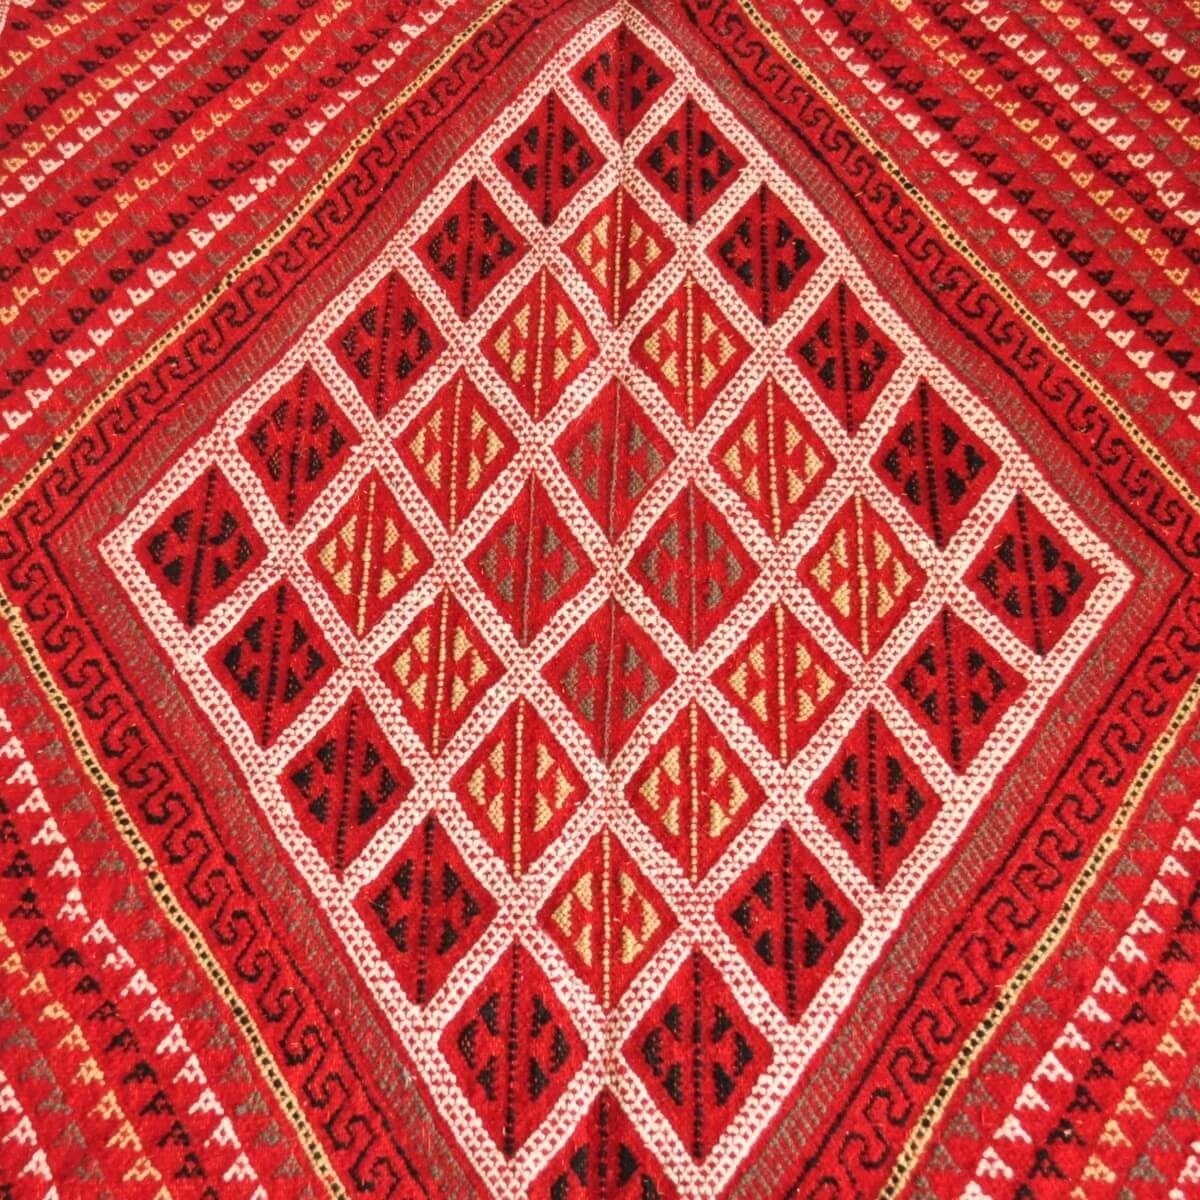 Berber tapijt Groot Tapijt Margoum Ilya 165x255 Rood (Handgeweven, Wol, Tunesië) Tunesisch Margoum Tapijt uit de stad Kairouan. 